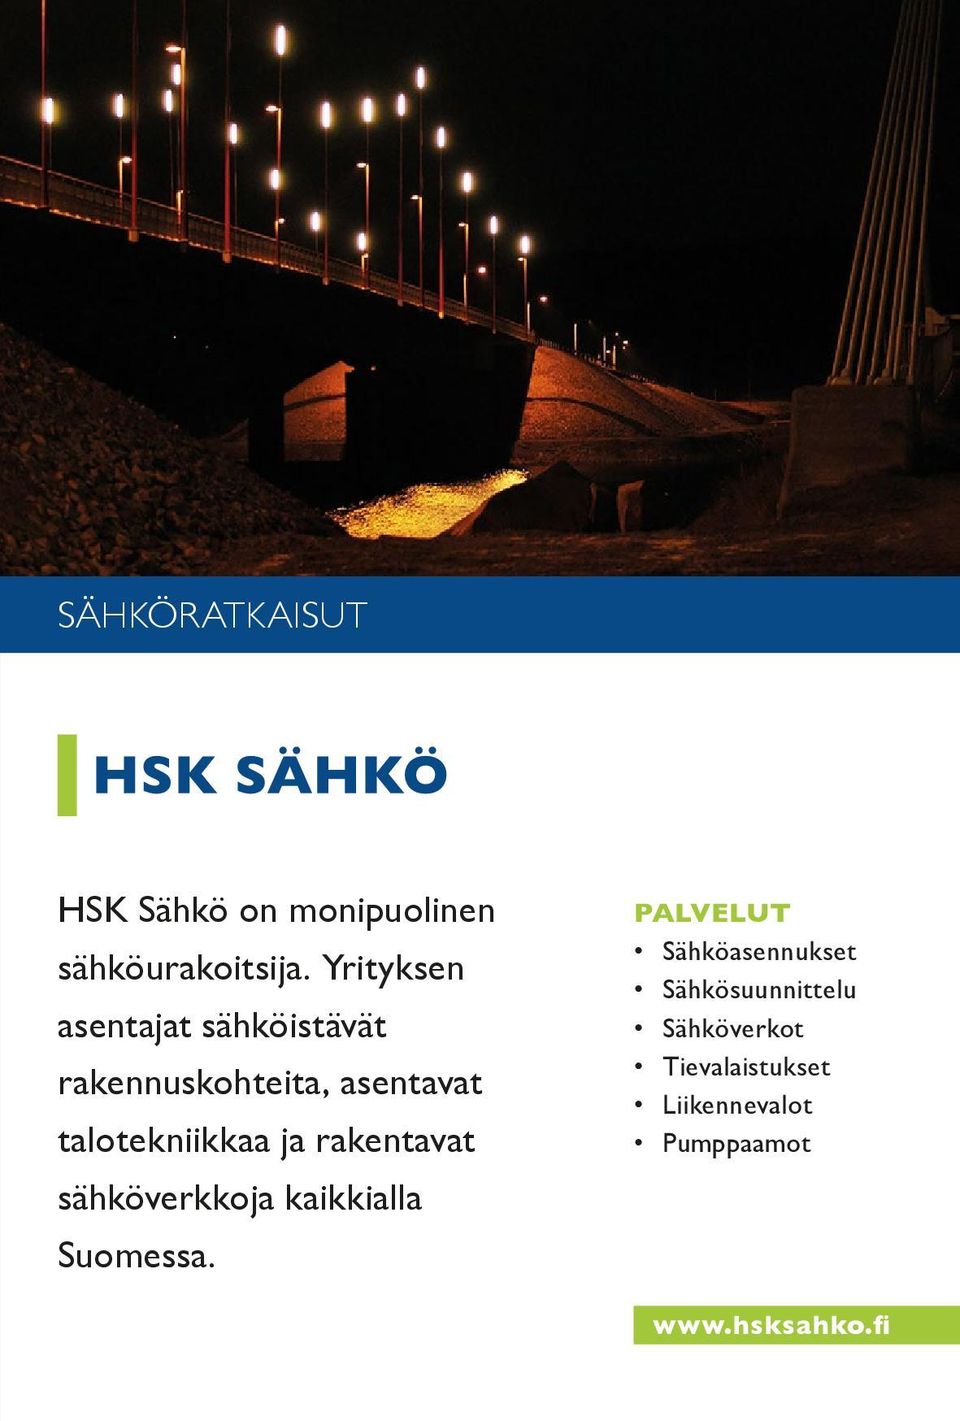 tekniikkaa ja rakentavat sähköverkkoja kaikkialla Suomessa.